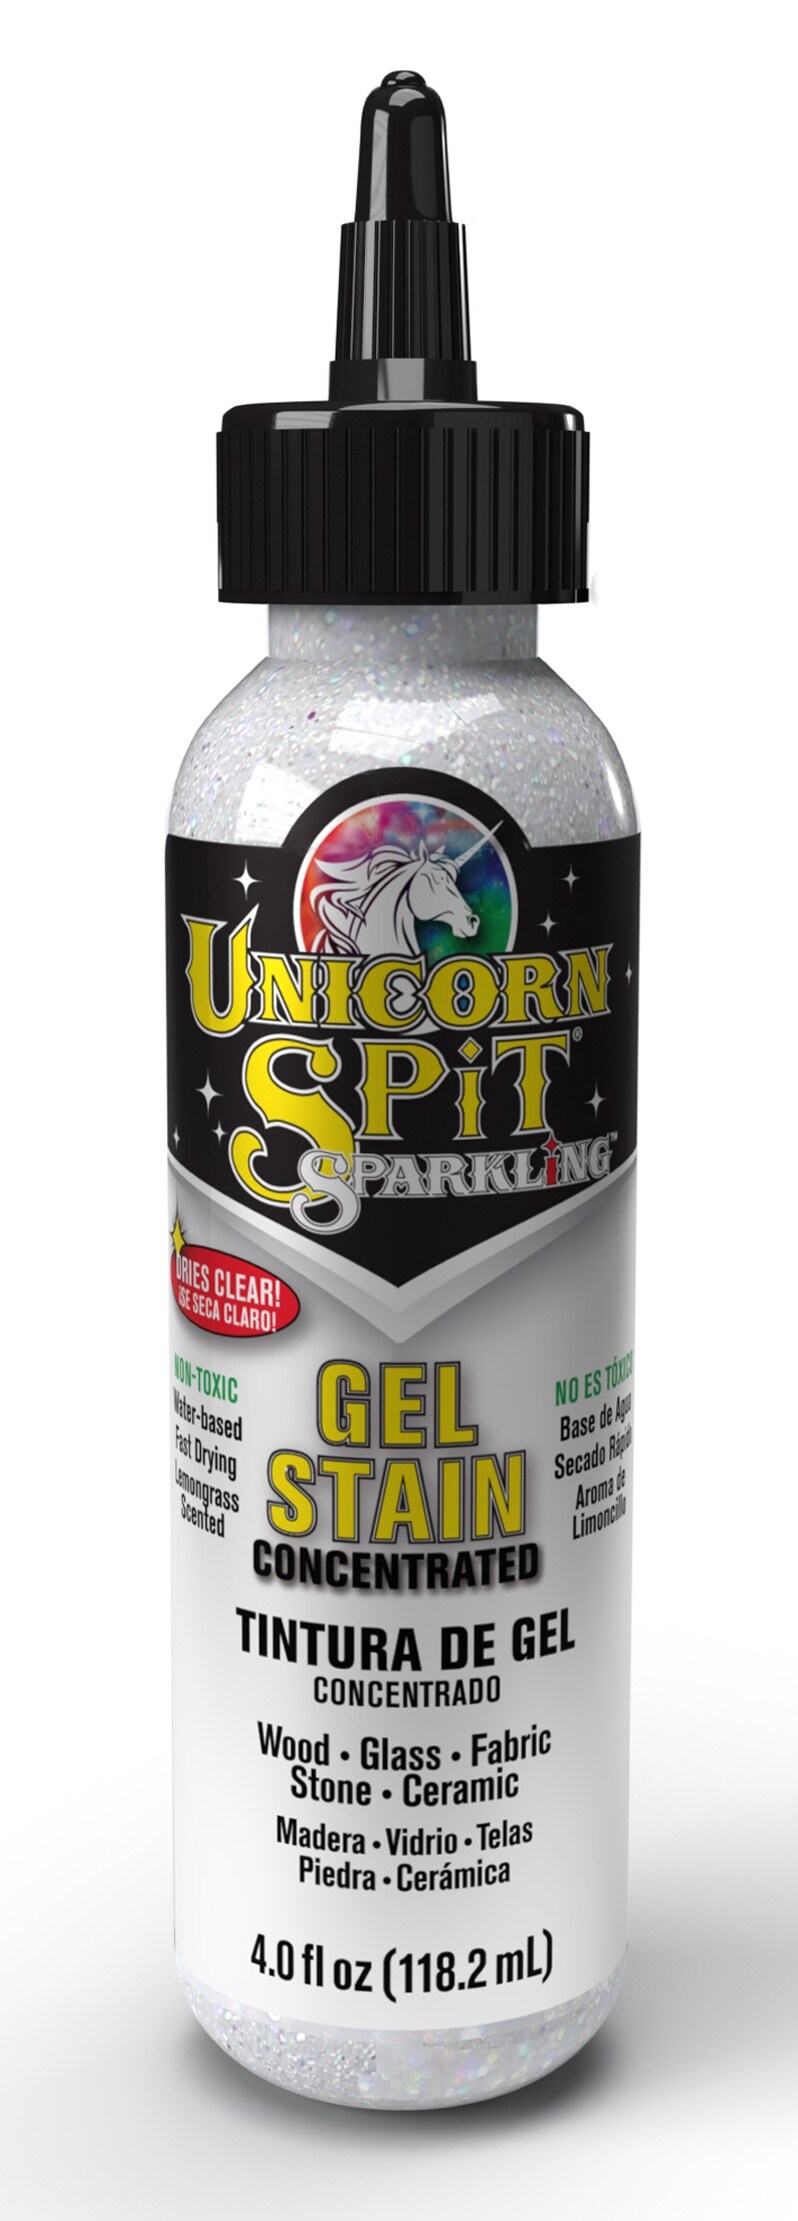 Unicorn Spit Sparkling Wood Stain & Glaze 4oz